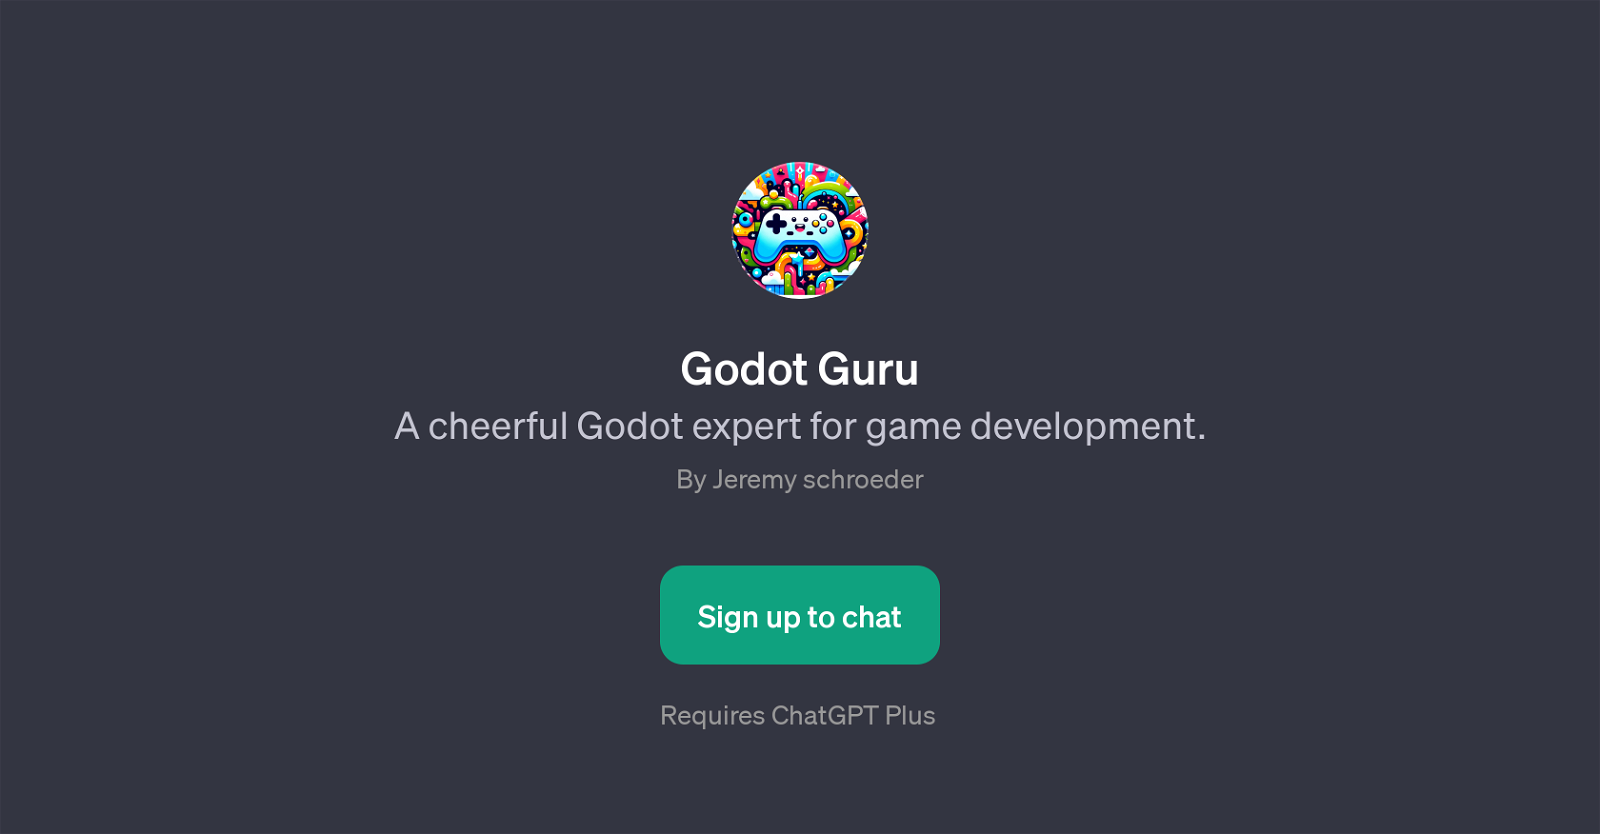 Godot Guru website